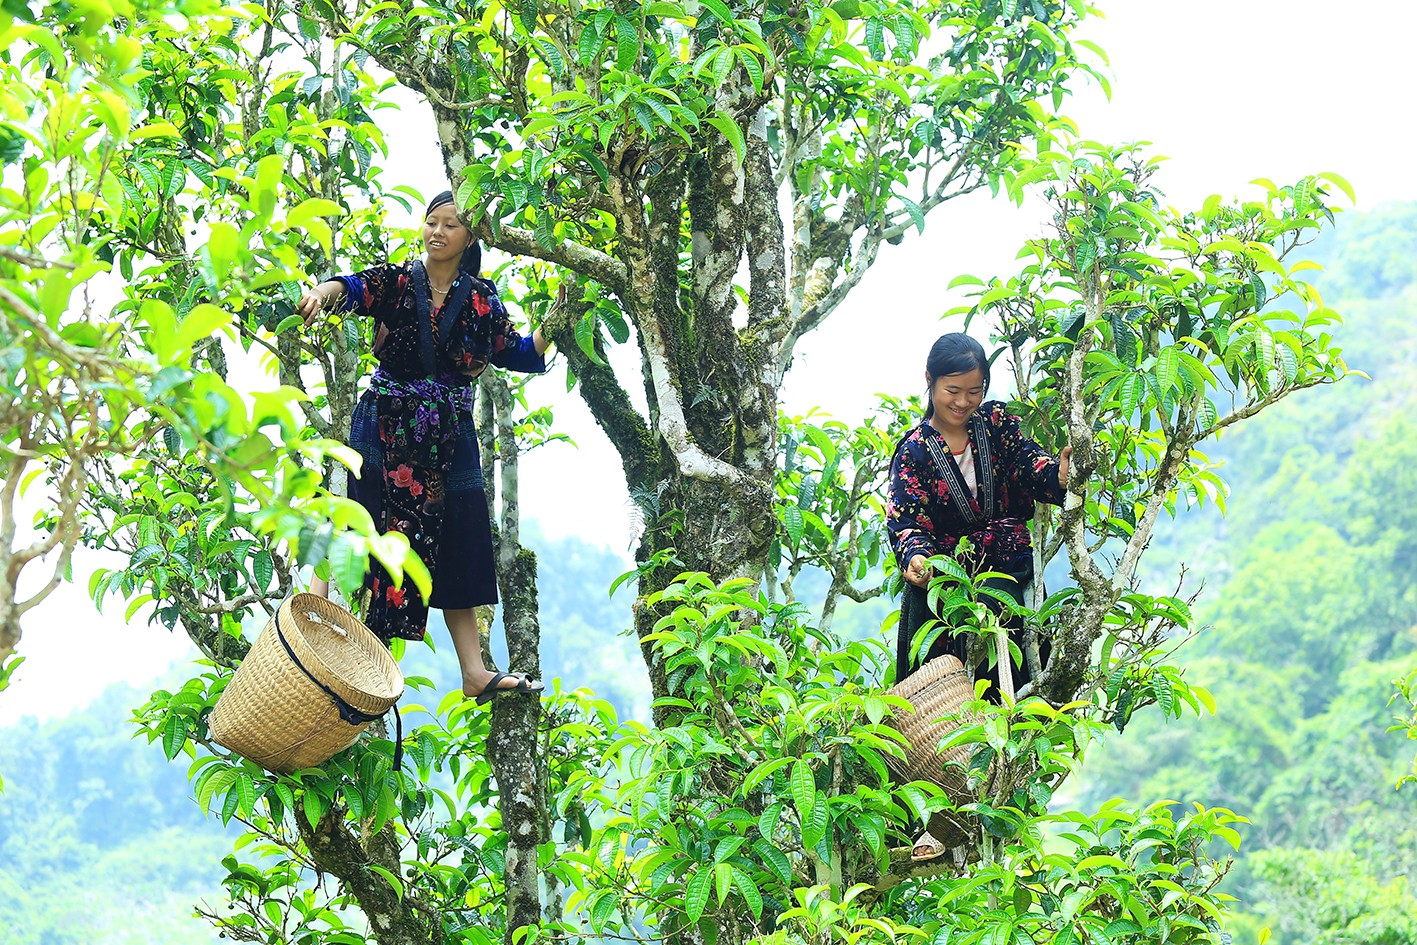 Phát triển thương mại miền núi: Tỉnh Điện Biên mong muốn doanh nghiệp hỗ trợ người dân tổ chức sản xuất